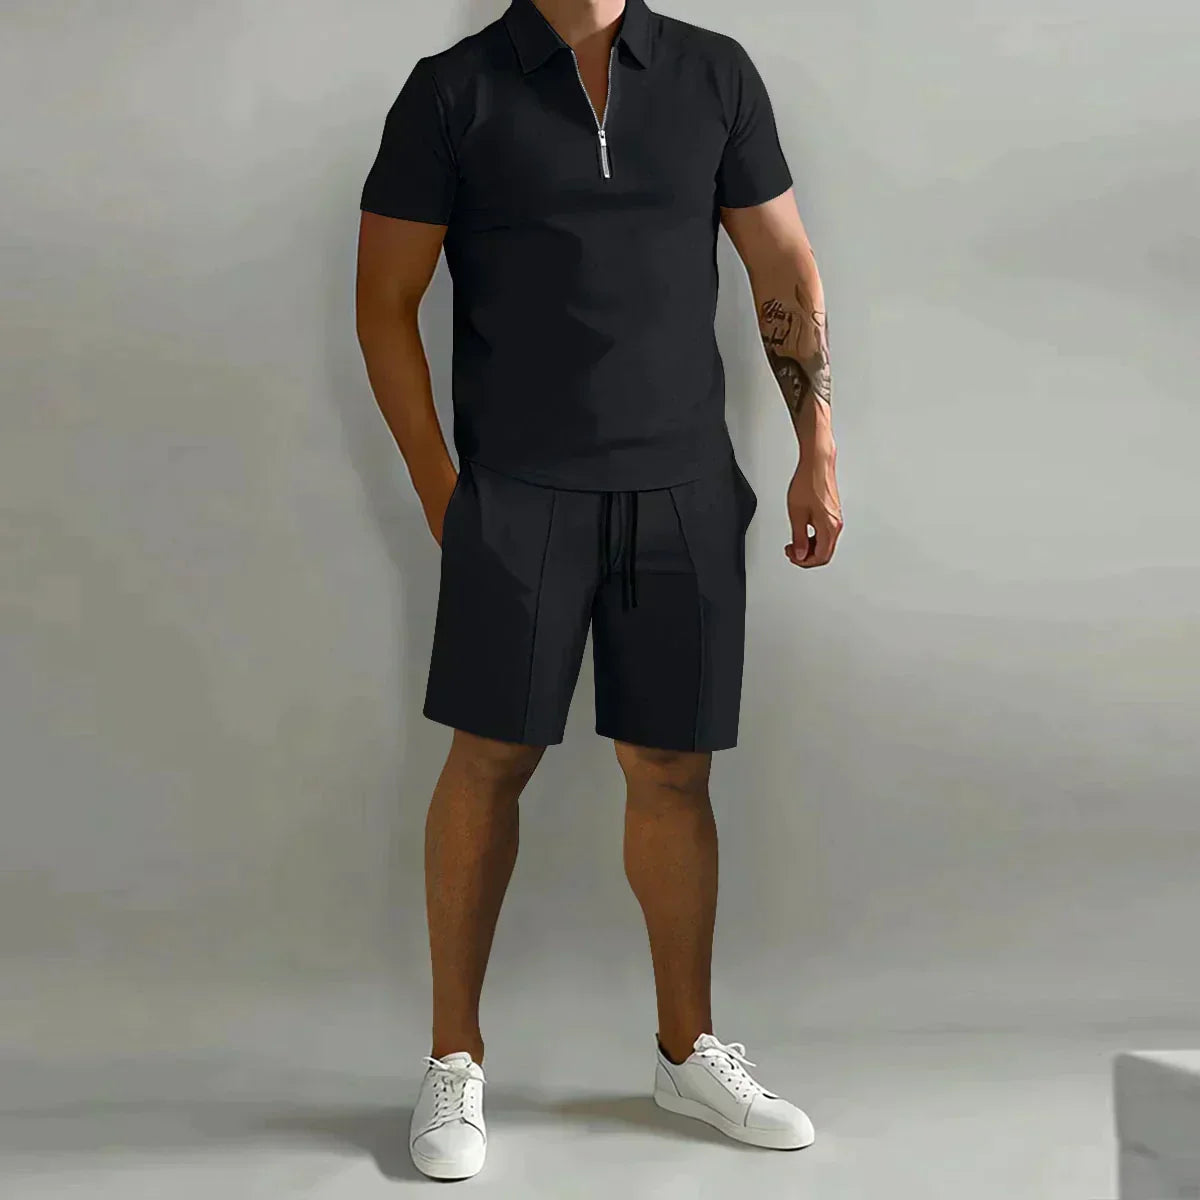 Thomas™ | Poloset – Poloshirt + Shorts